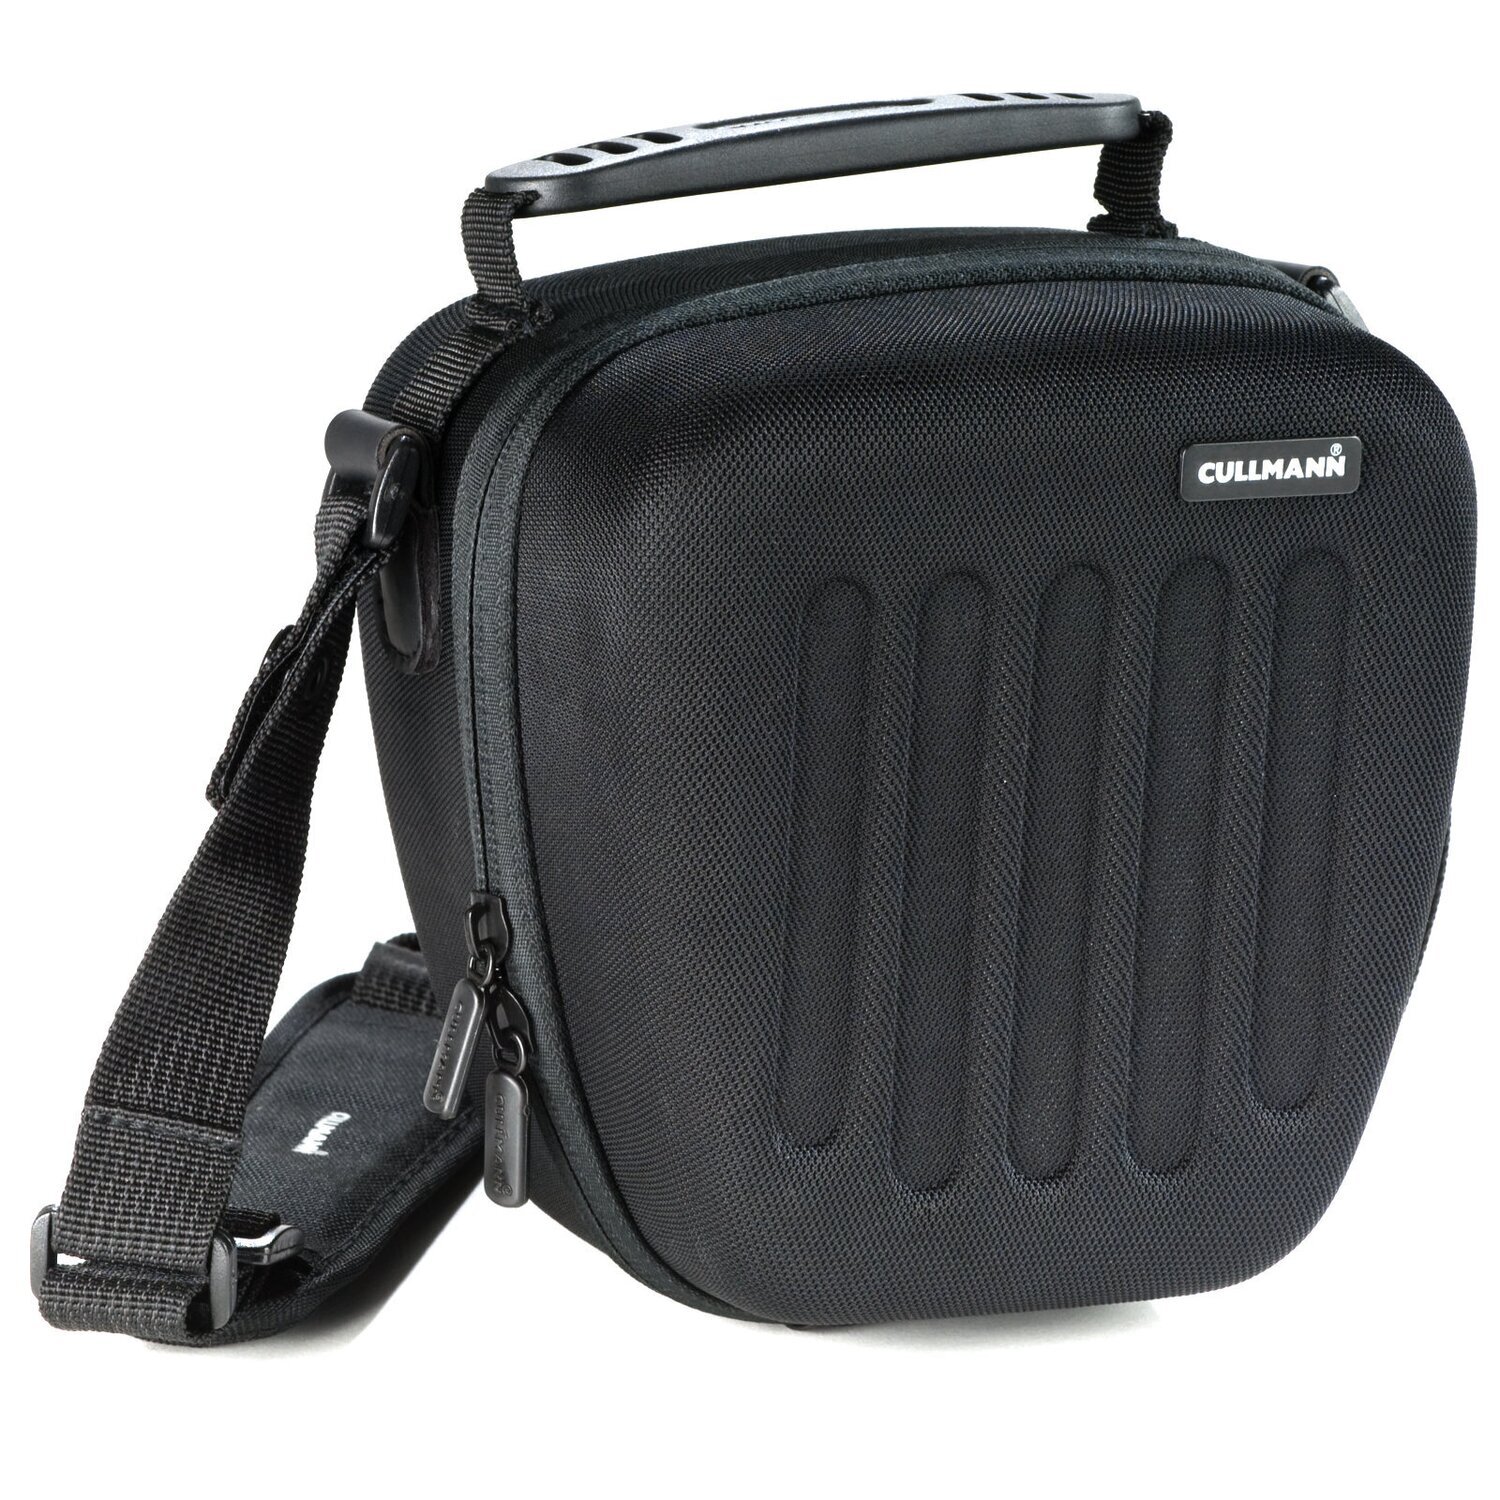 Hardcase Hartschalen Kameratasche passend für Panasonic Lumix DMC-FZ83